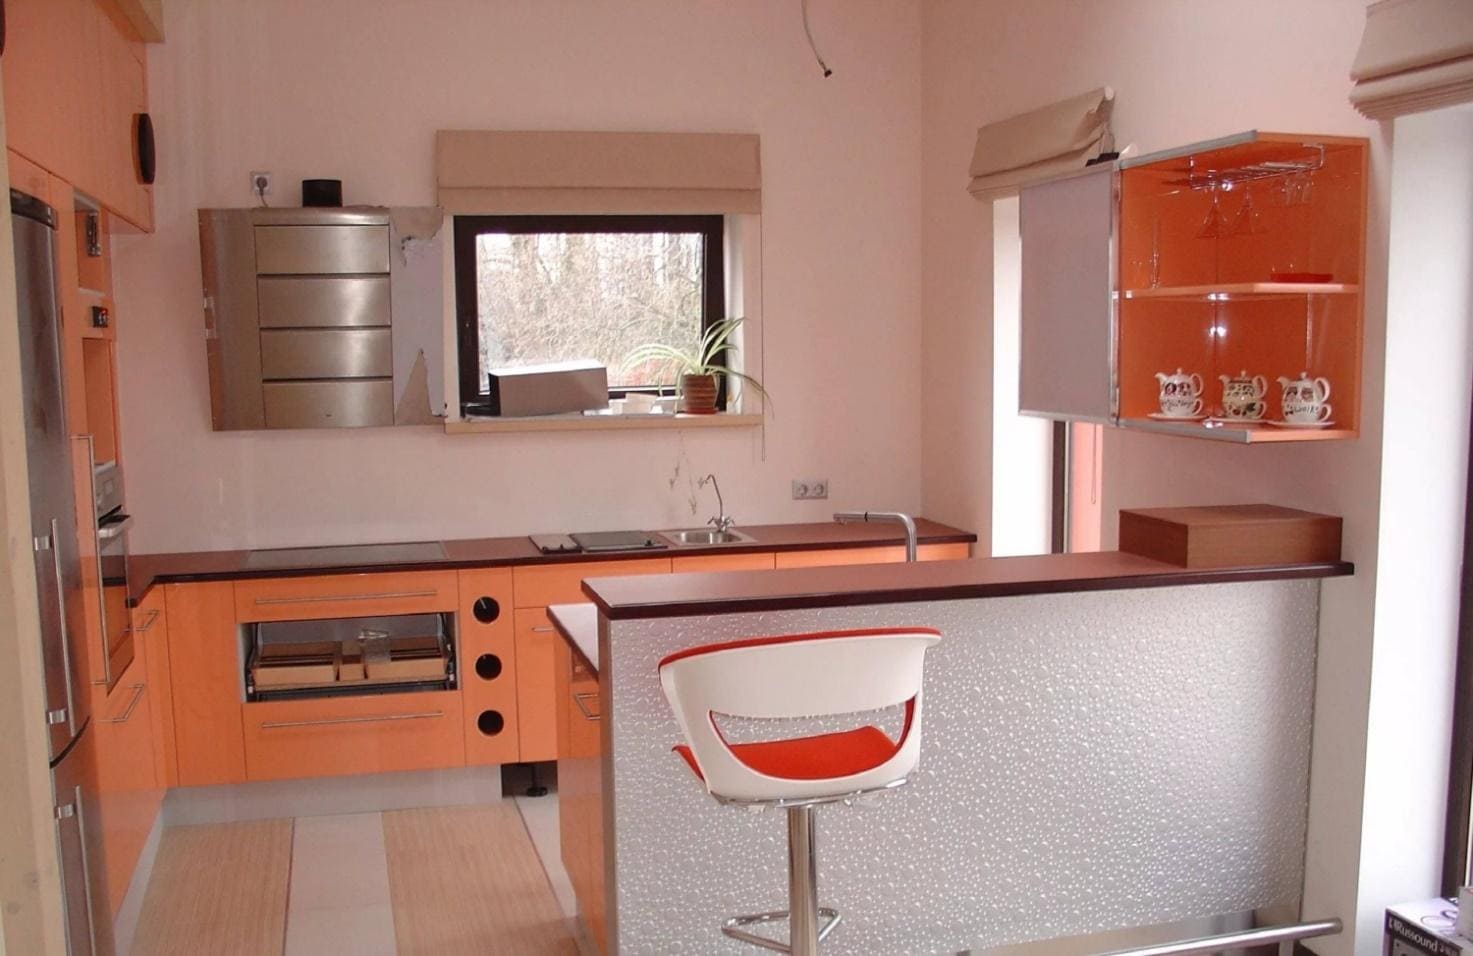 Персиковый цвет в дизайне кухни